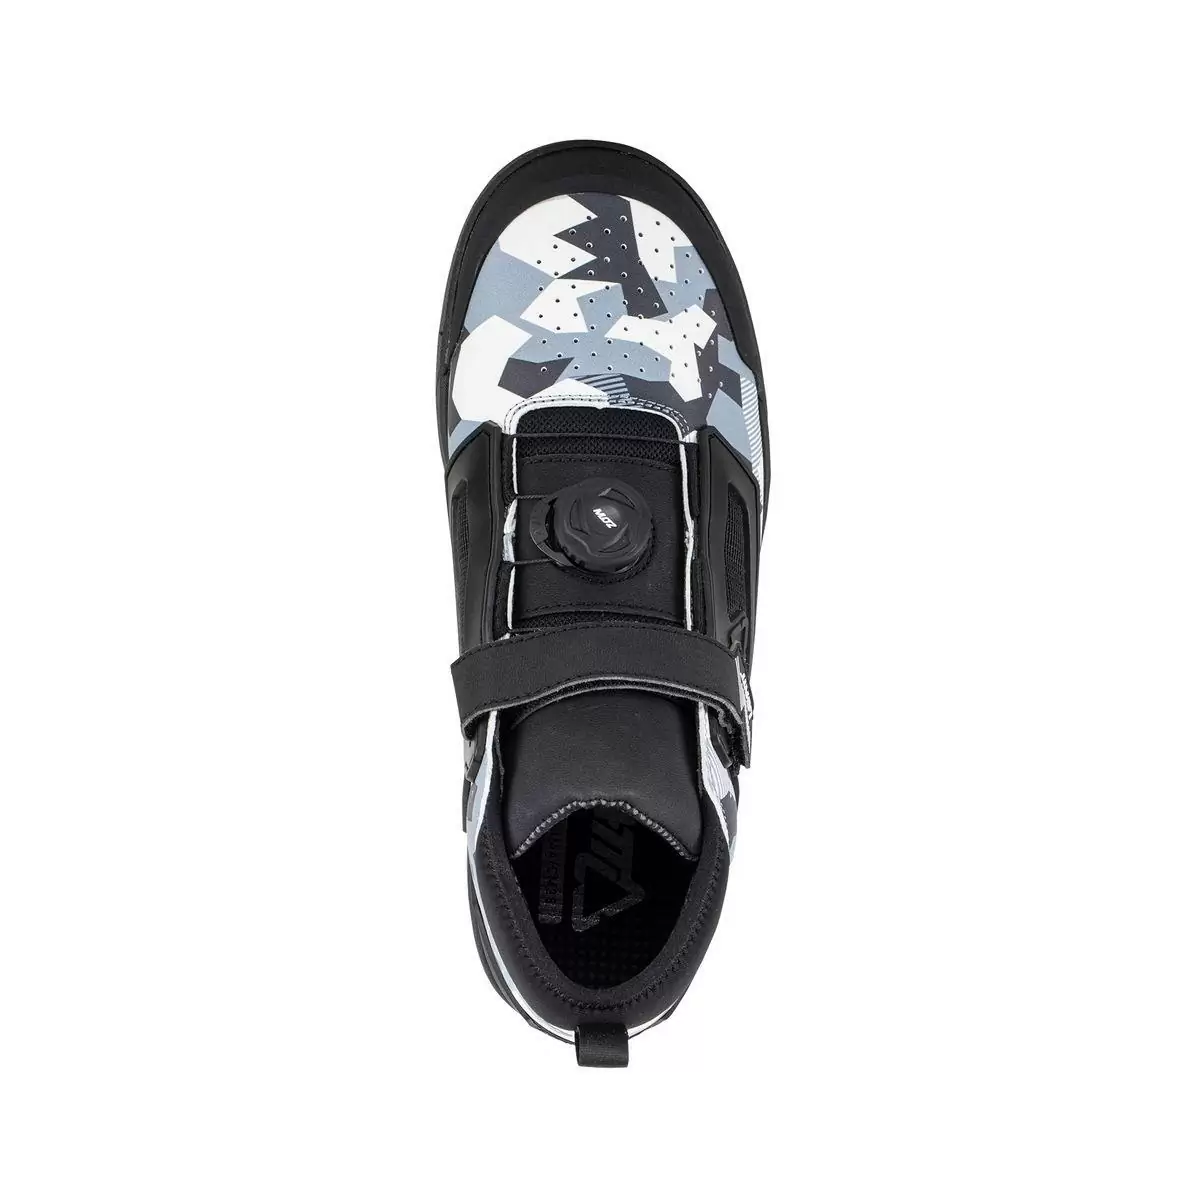 Chaussures VTT 3.0 Flat Pro Blanc/Noir Taille 40 #2